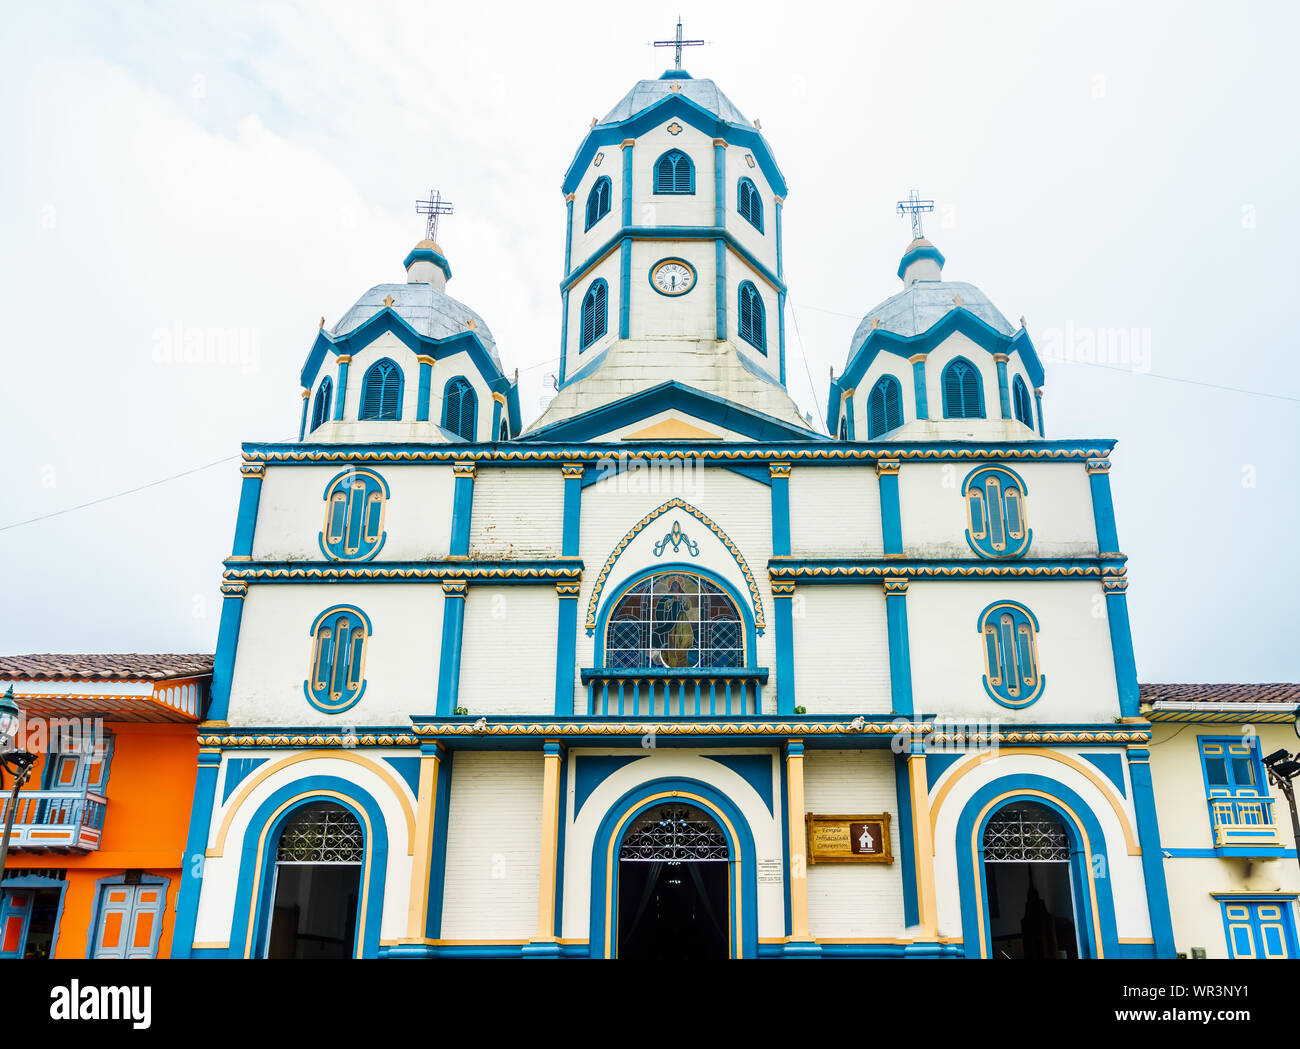 Vue sur l'église coloniale dans la ville de Filandia en Colombie Banque D'Images